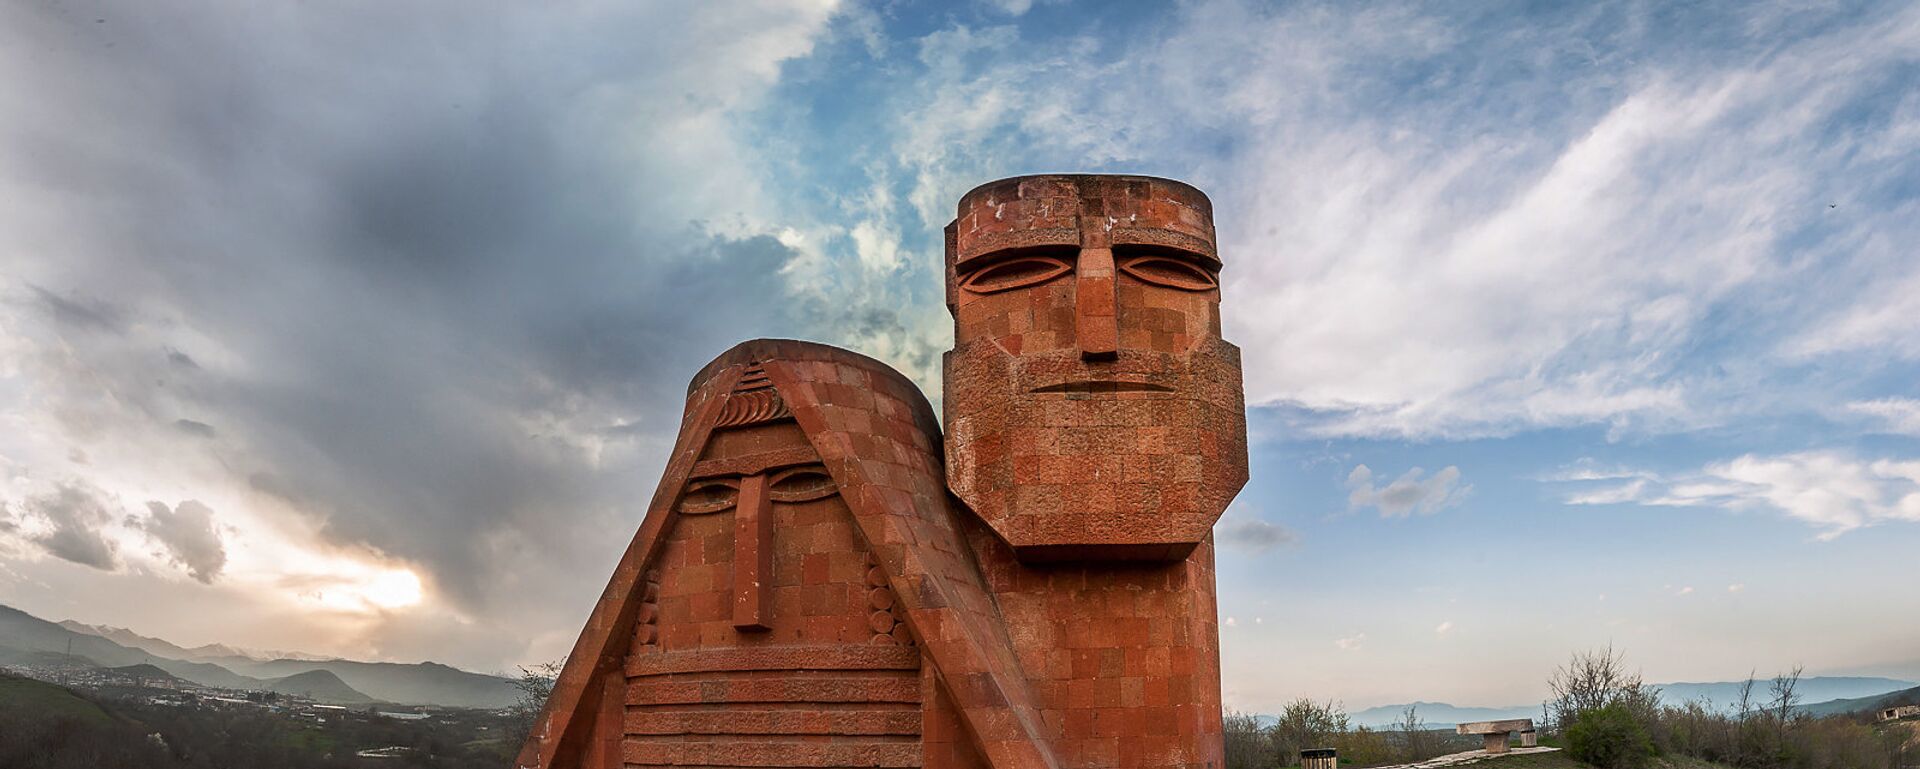 Памятник Мы-наши горы. Степанакерт. НКР - Sputnik Армения, 1920, 20.05.2016